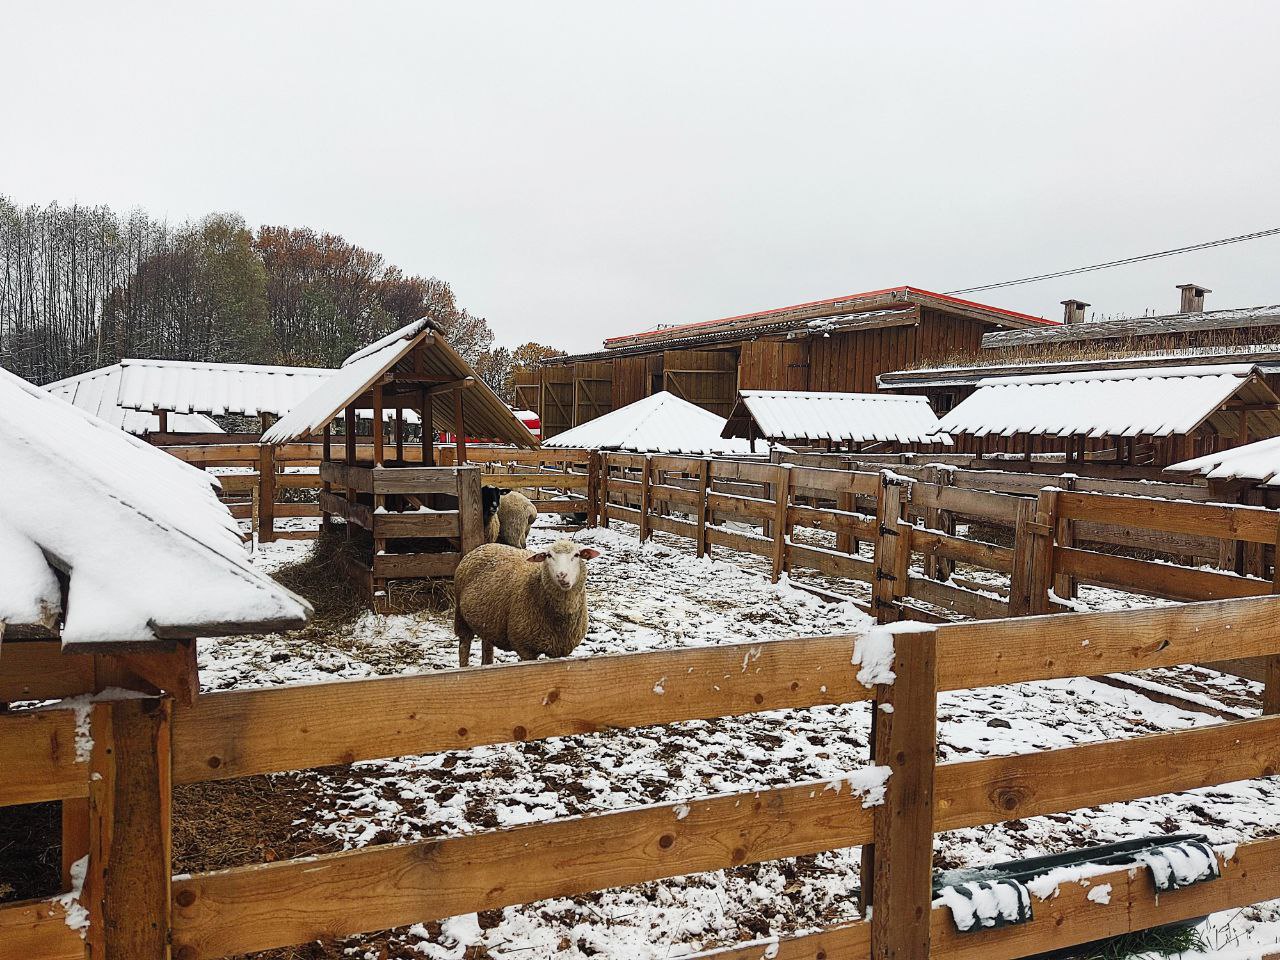 Проведены промежуточные итоги реализации инвестпроекта по овцеводству в подмосковном Серпухове